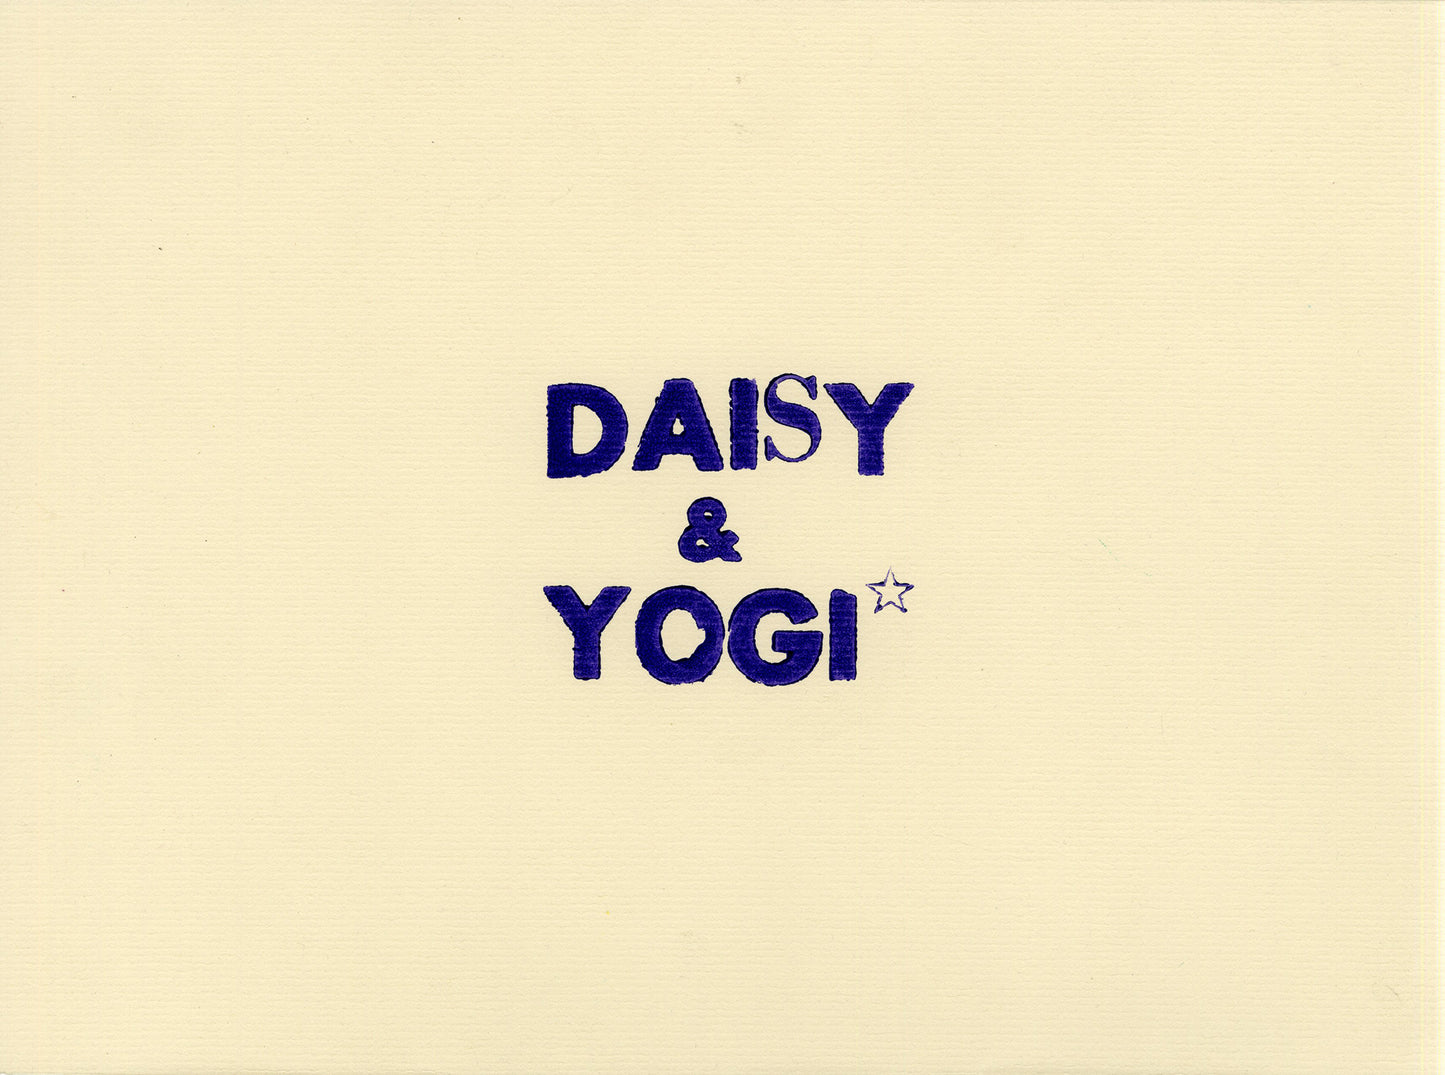 Daisy & Yogi